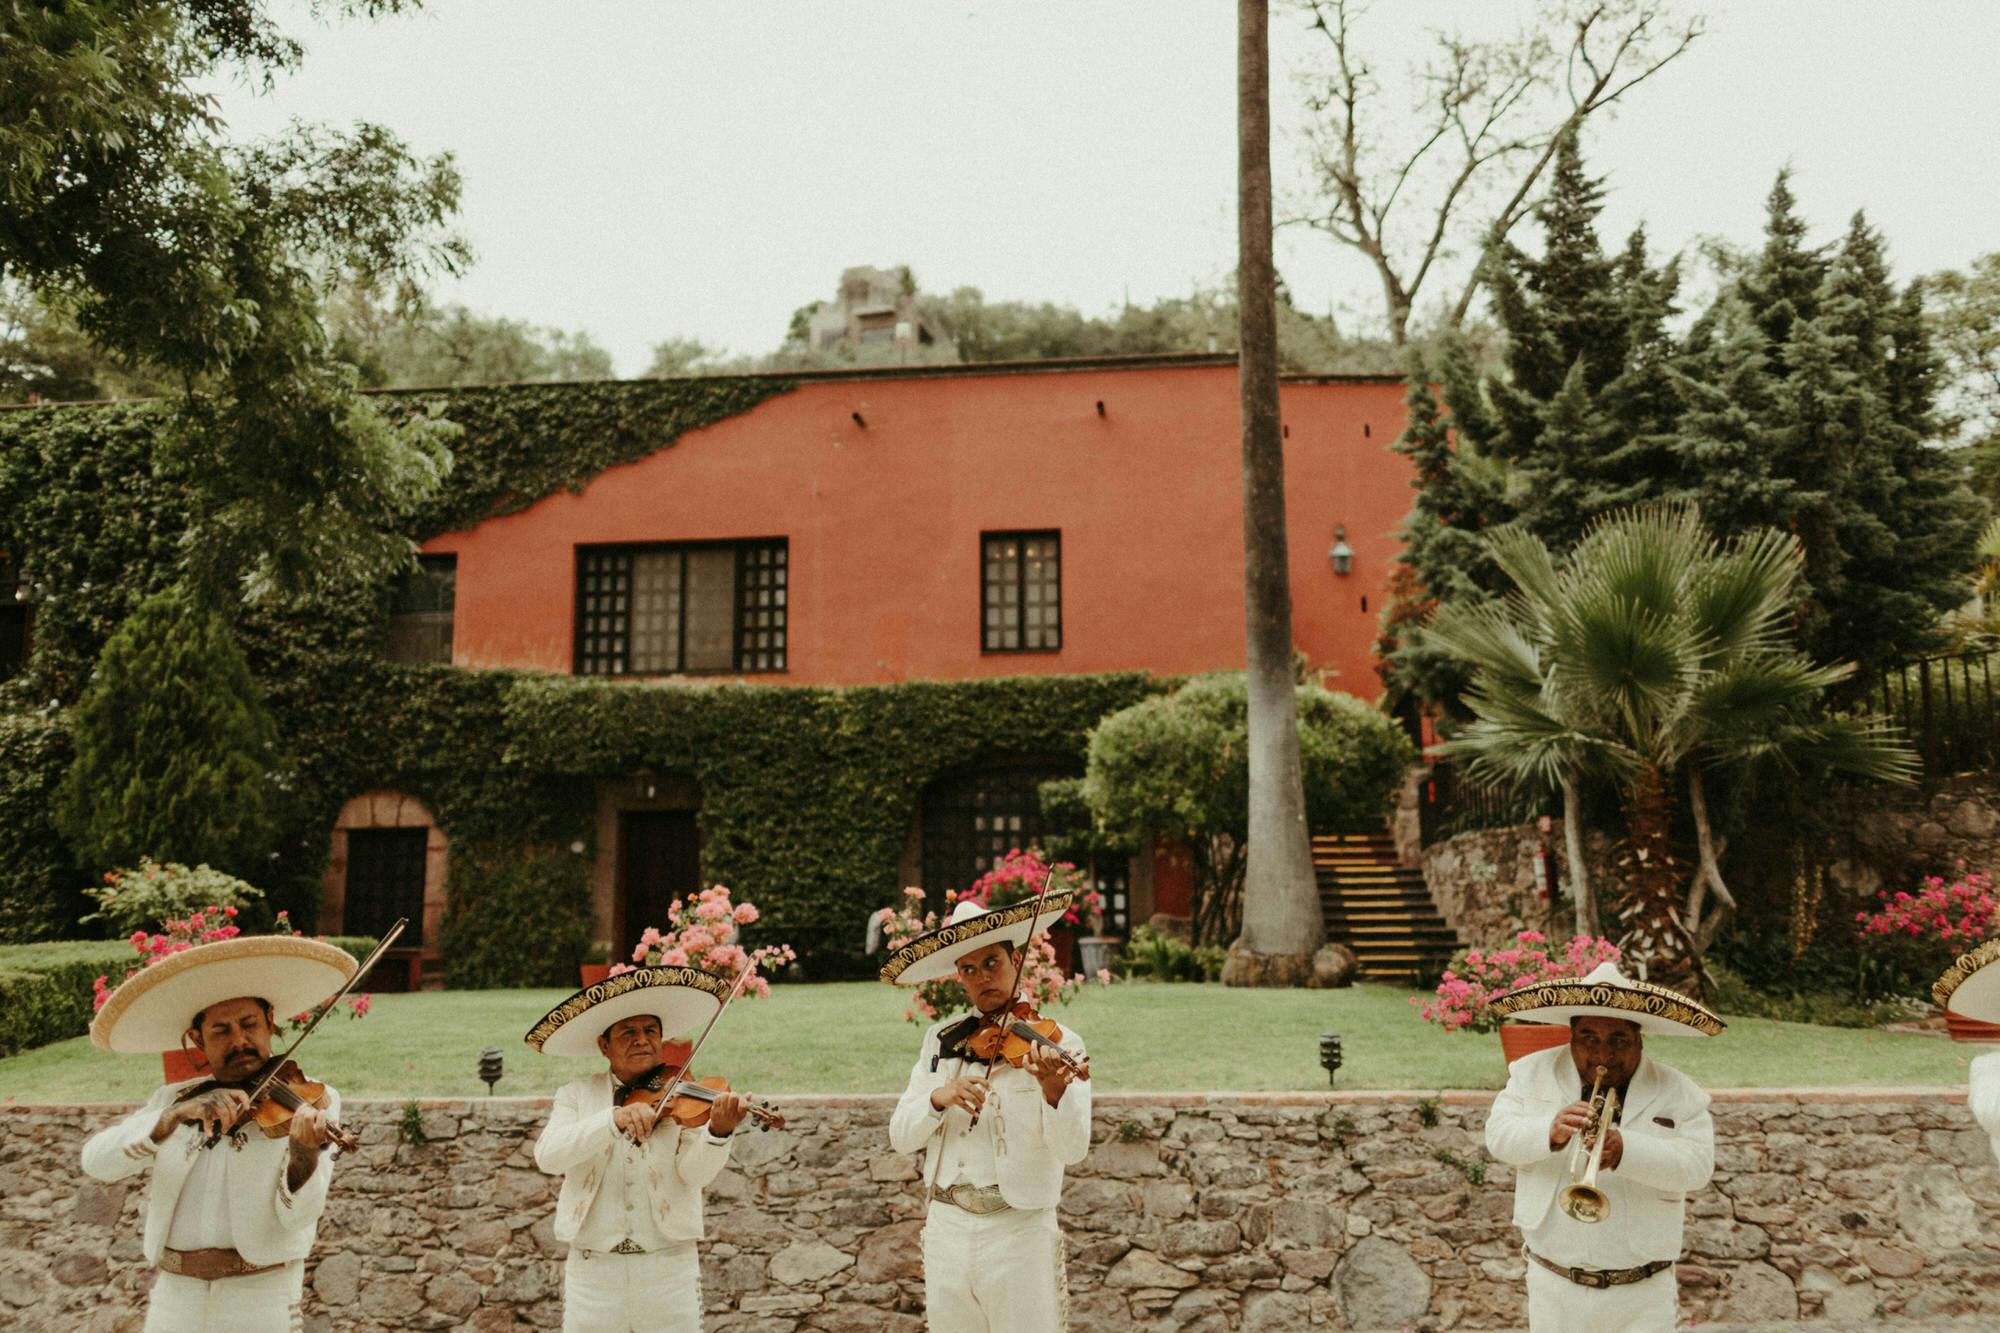 mexican mariachi band at wedding